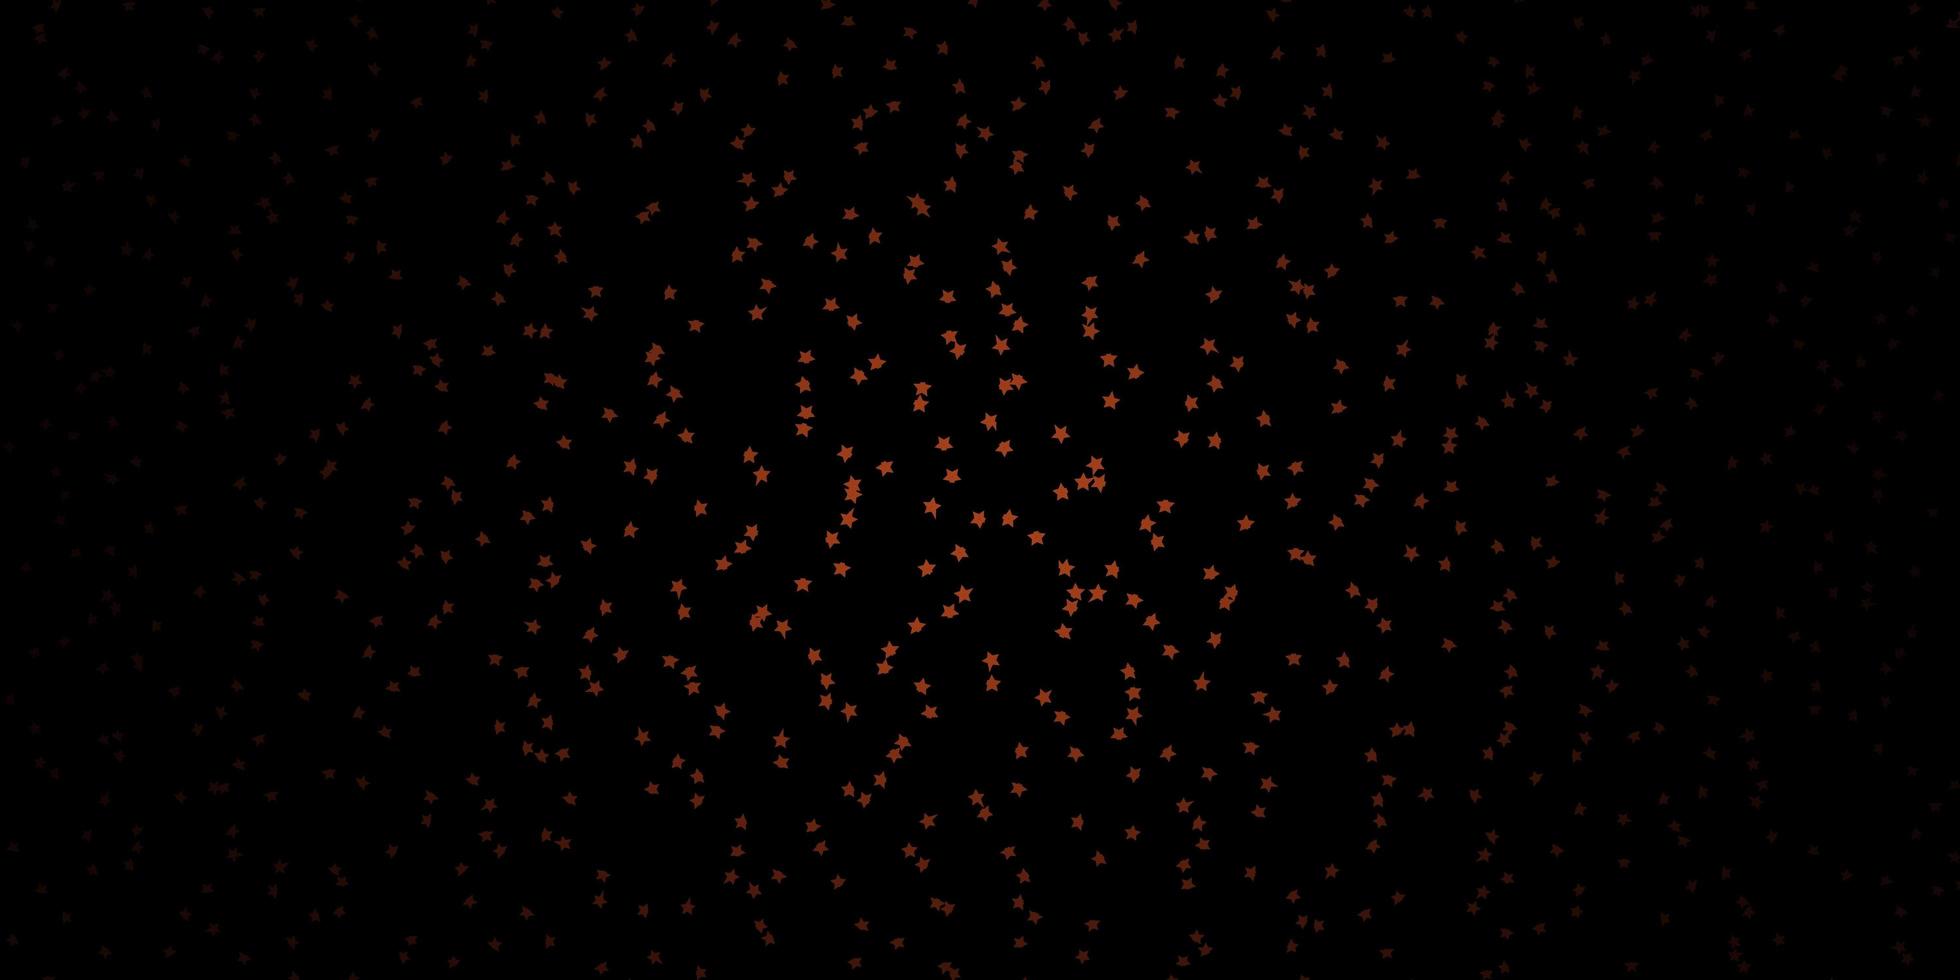 Fondo de vector marrón oscuro con estrellas de colores Ilustración abstracta geométrica moderna con estrellas mejor diseño para su banner de cartel publicitario